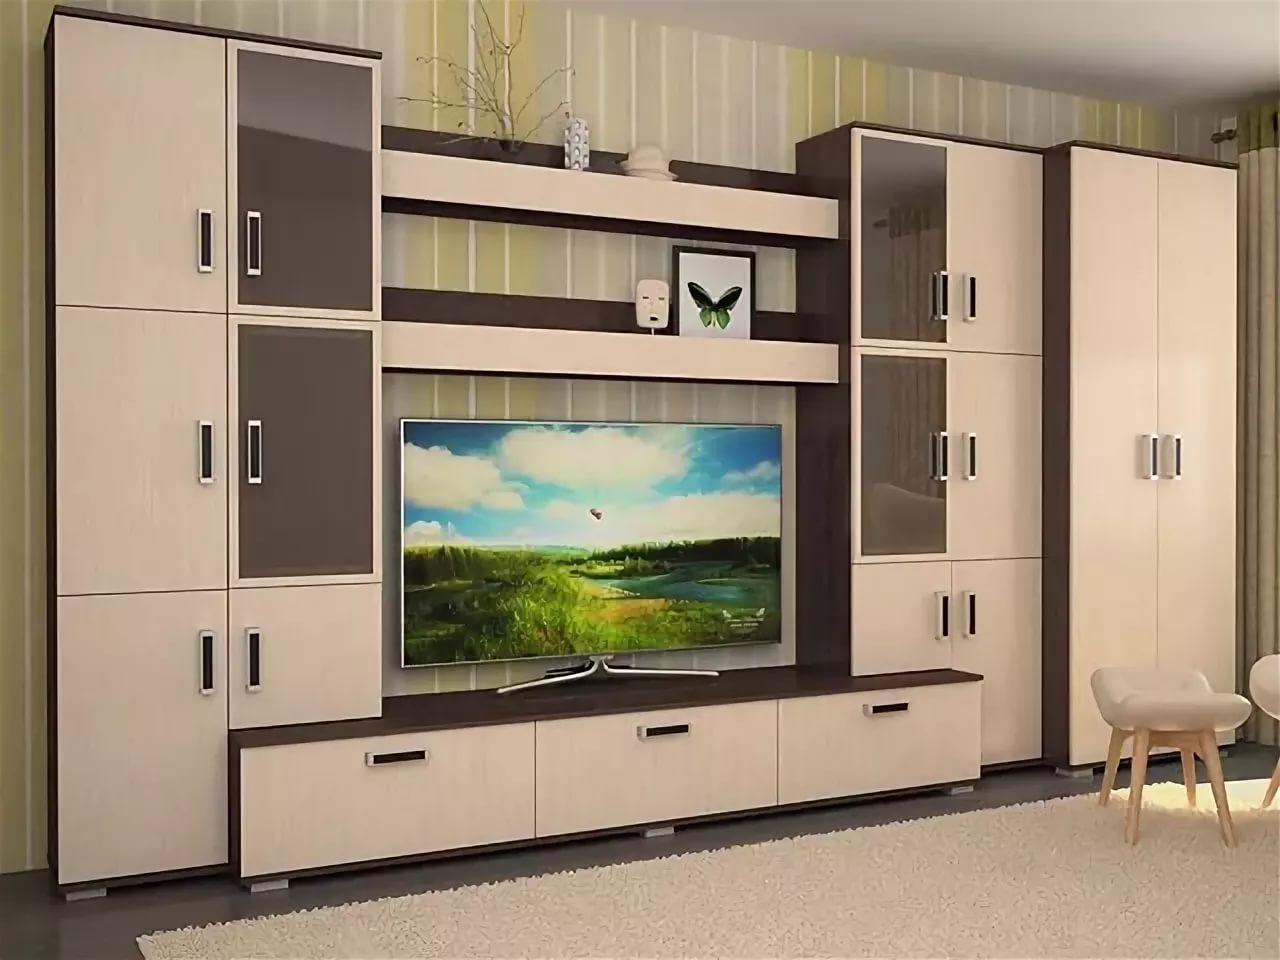 Стенка в комнату со шкафом для одежды и телевизора